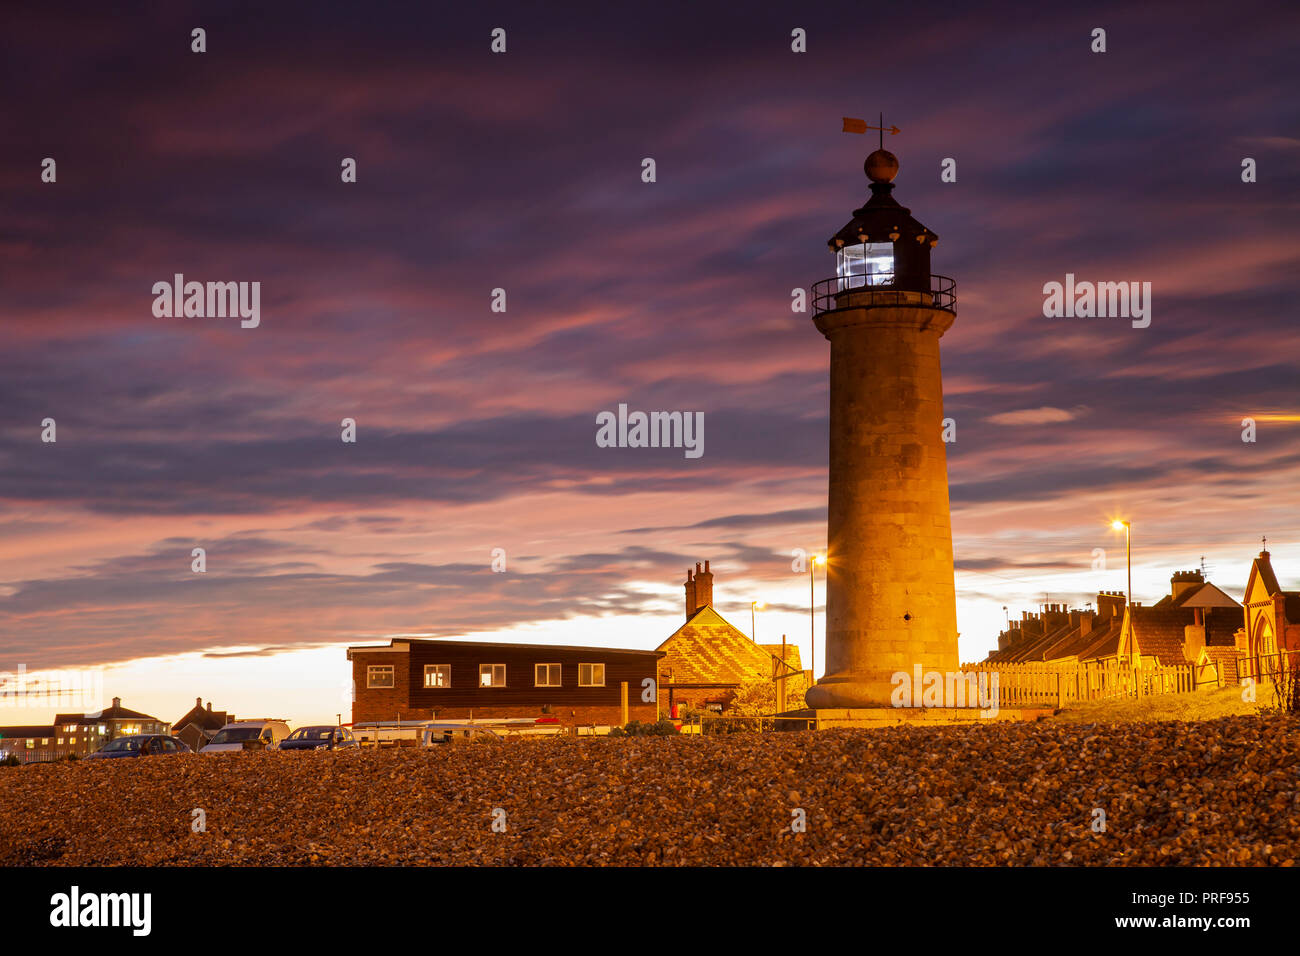 Crépuscule à Kingston dans le phare de Shoreham-by-Sea, West Sussex, Angleterre. Banque D'Images